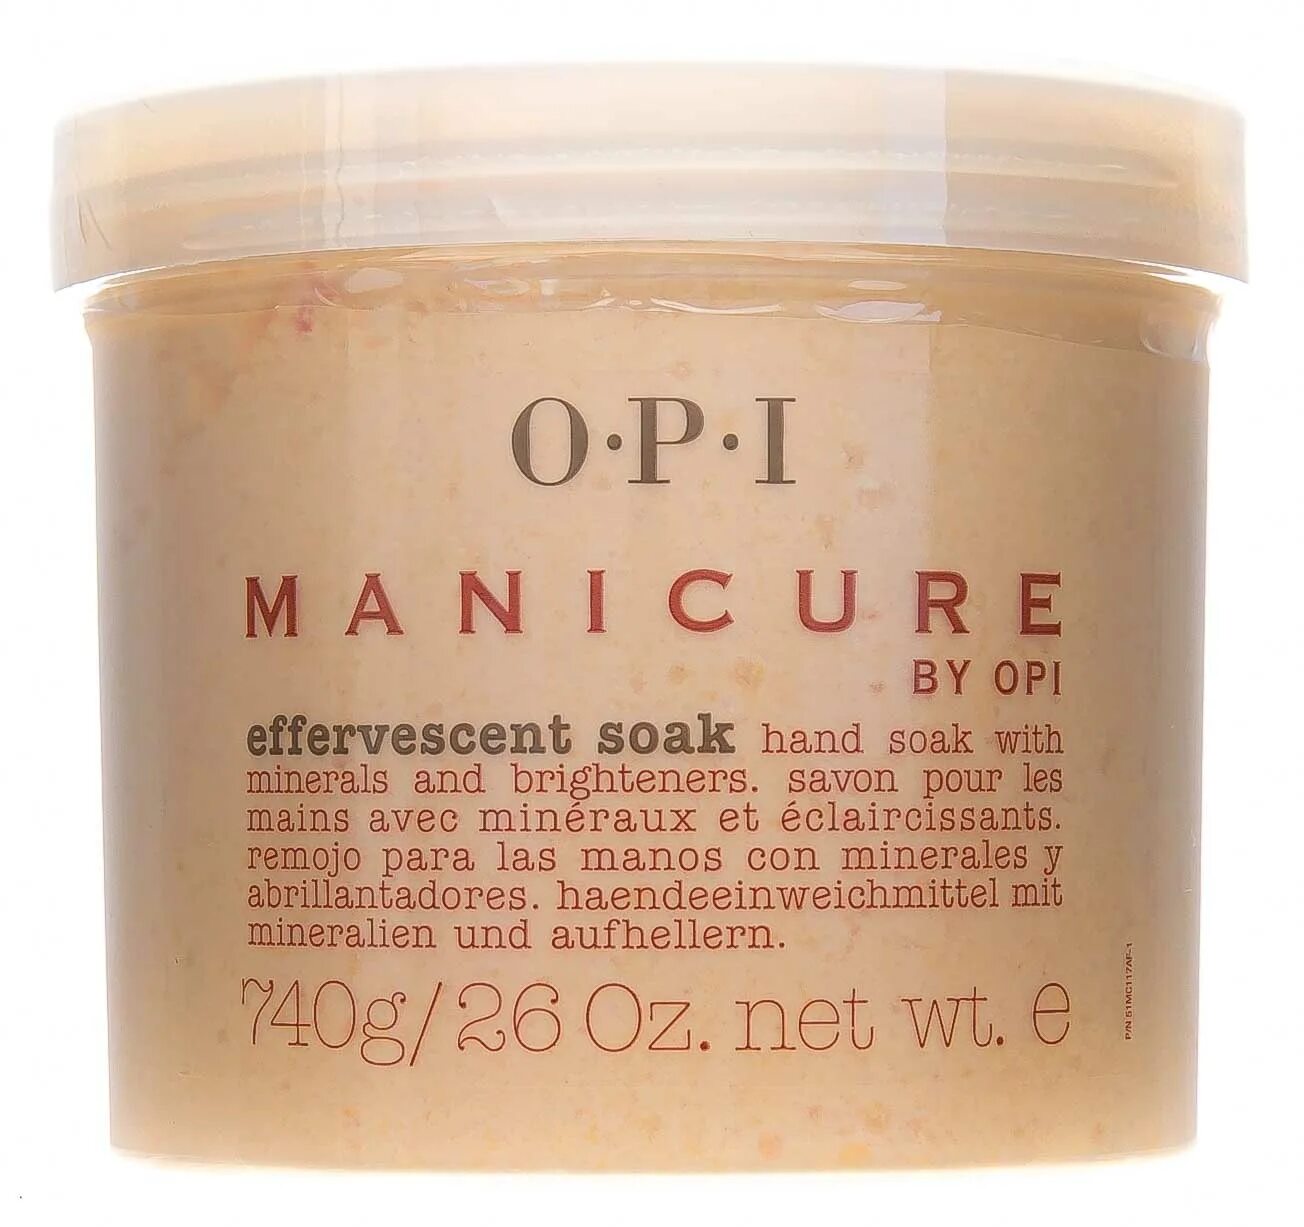 Скин скраб. OPI Manicure effervescent Soak. OPI крем. Кремы o.p.i.. OPI Pro Spa крем для рук.